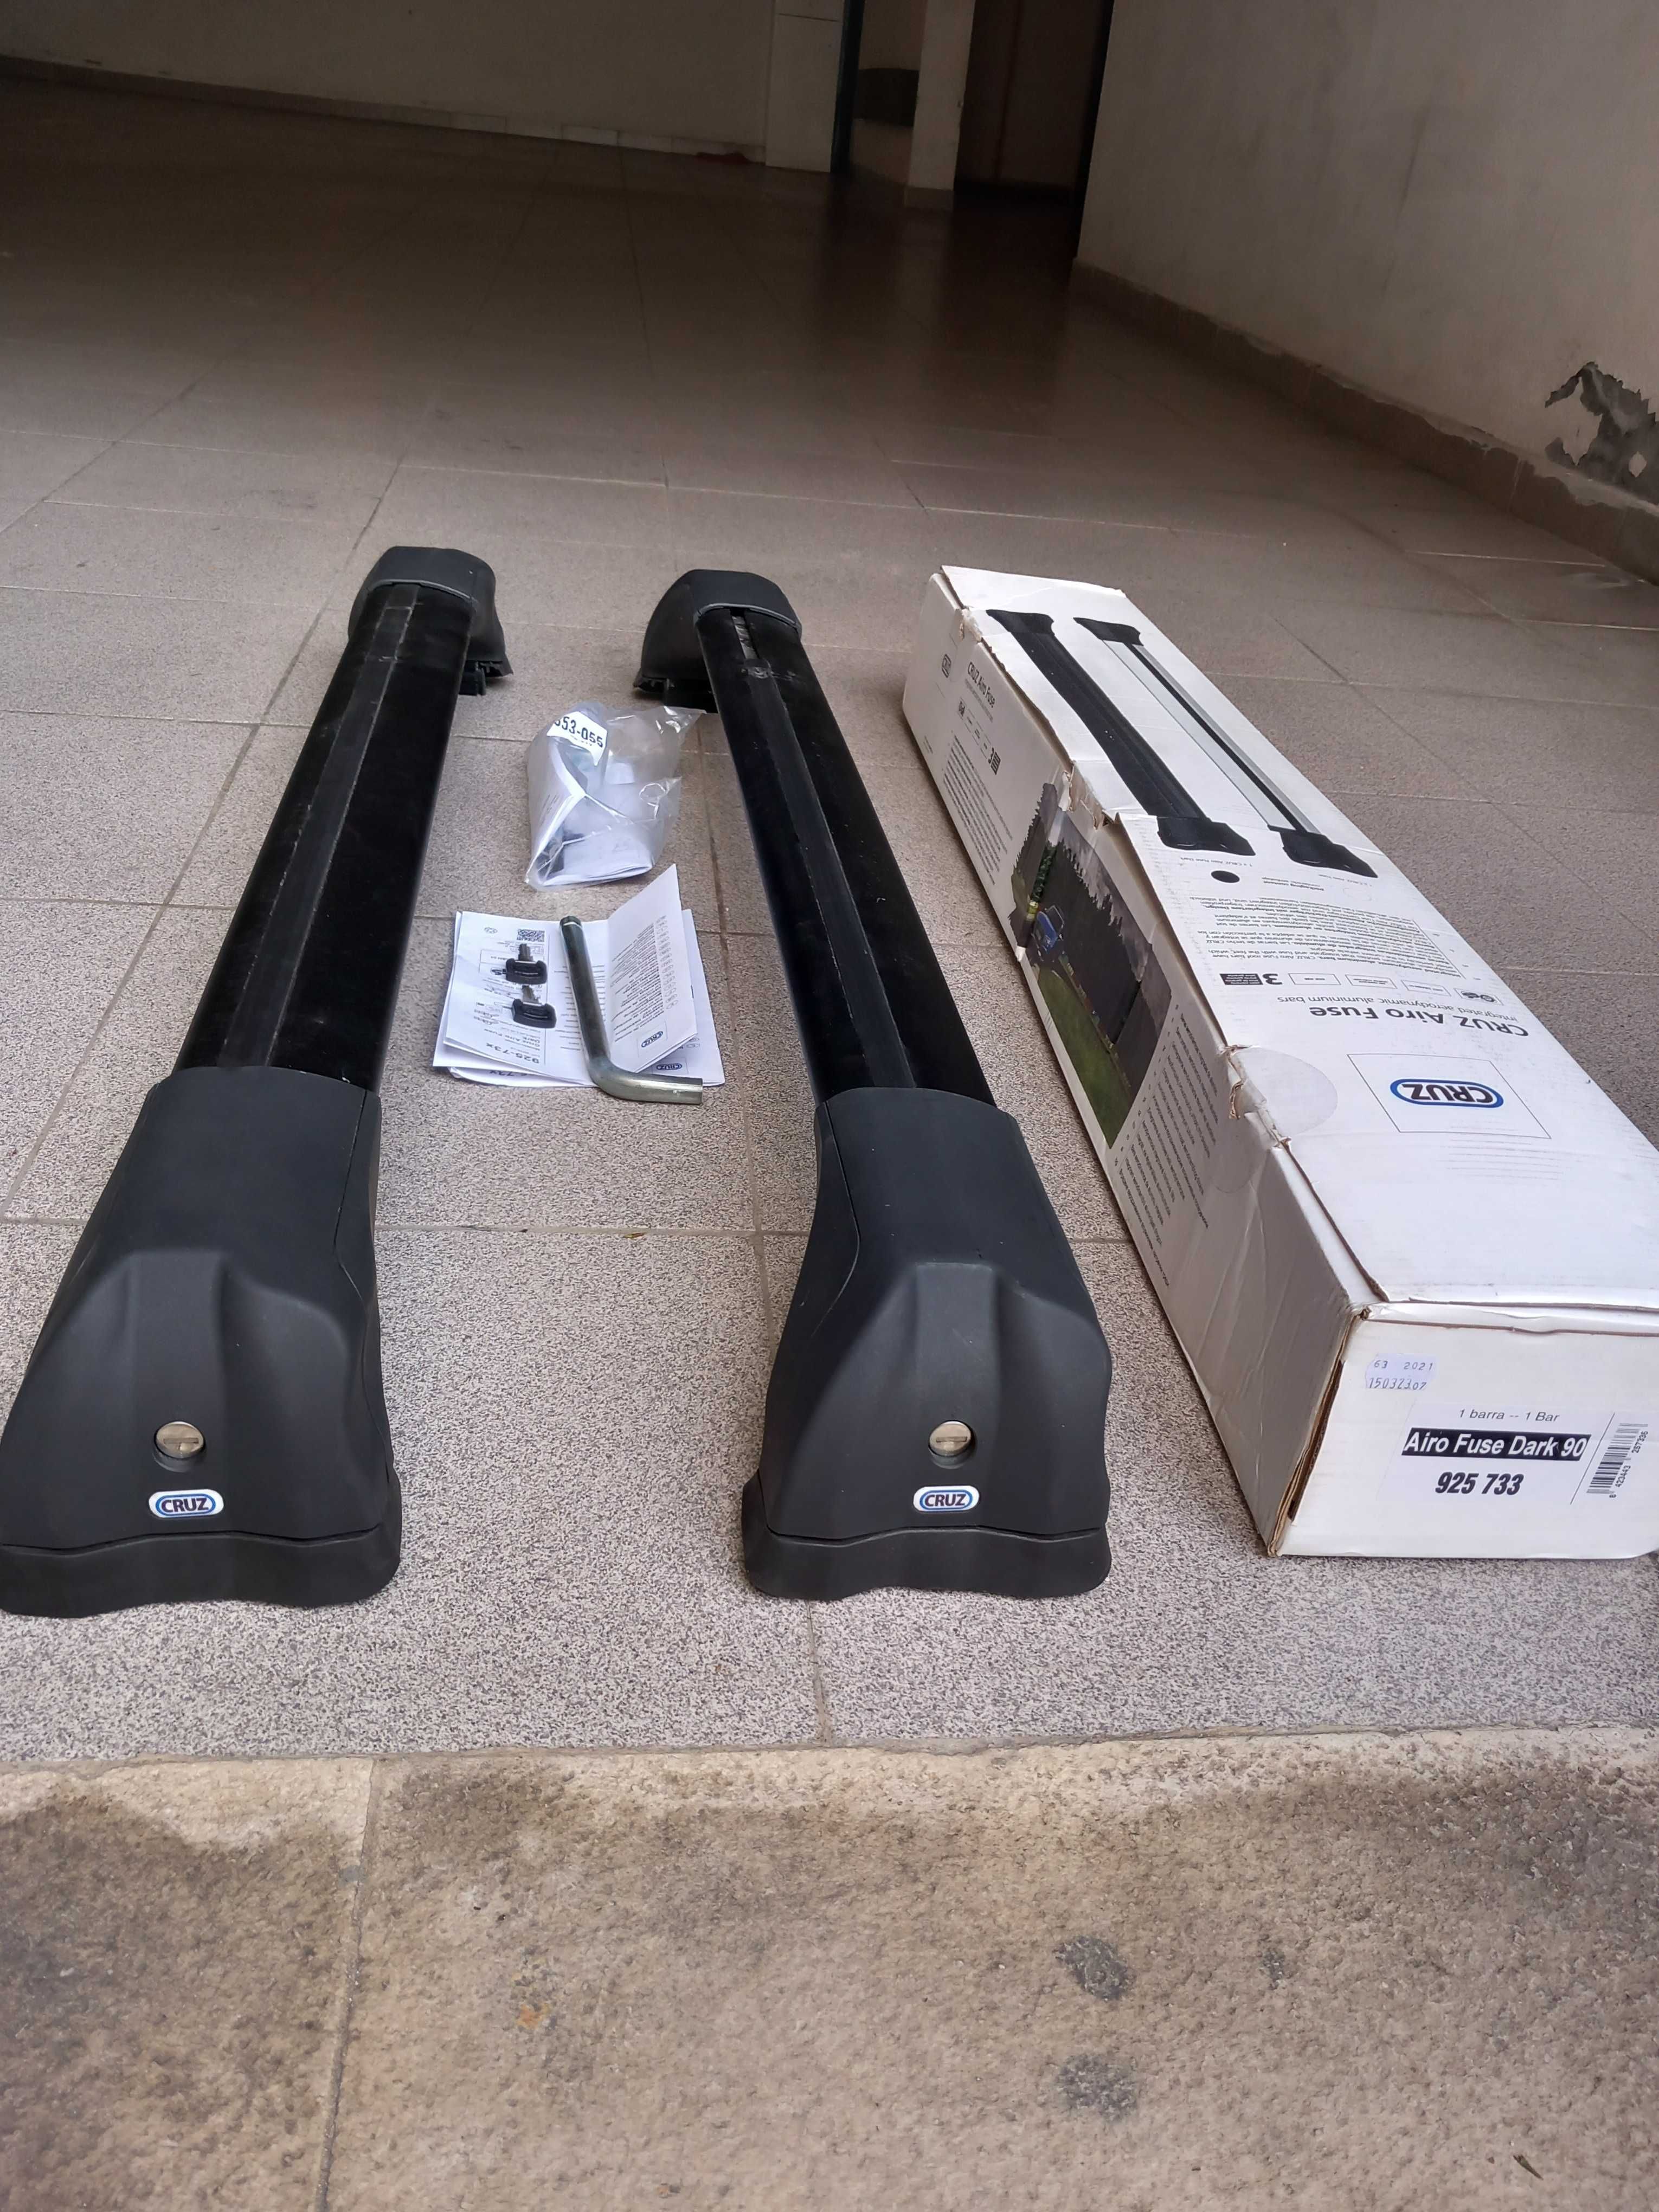 Barras de tejadilho para bmw modelo E91 com railing.